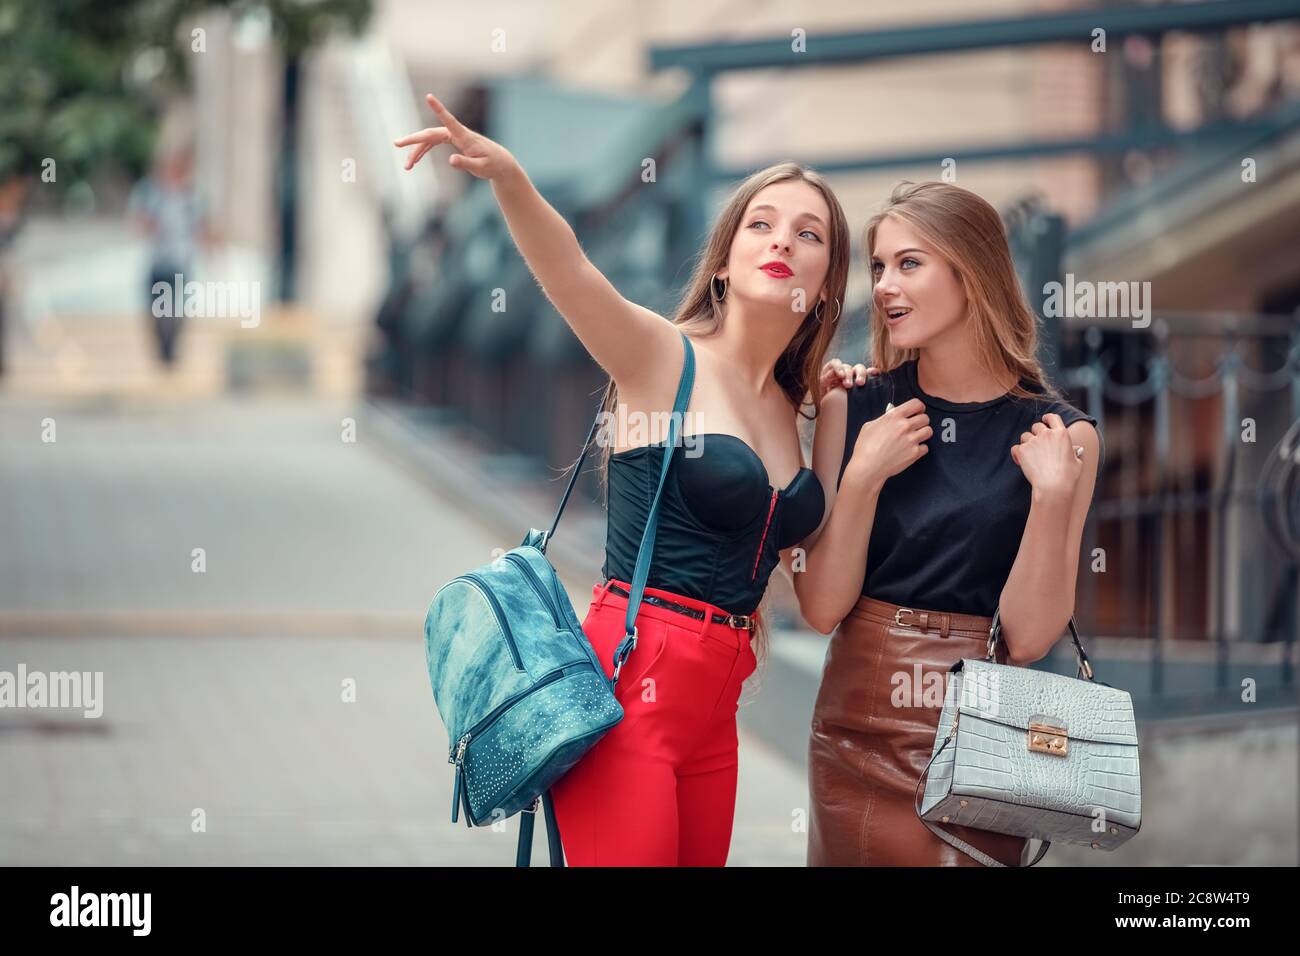 due allegre donne turisti moderni mentre si vedono nella città vecchia. una donna indica una vista, e anche un'altra donna entusiasta guarda in su. Foto Stock